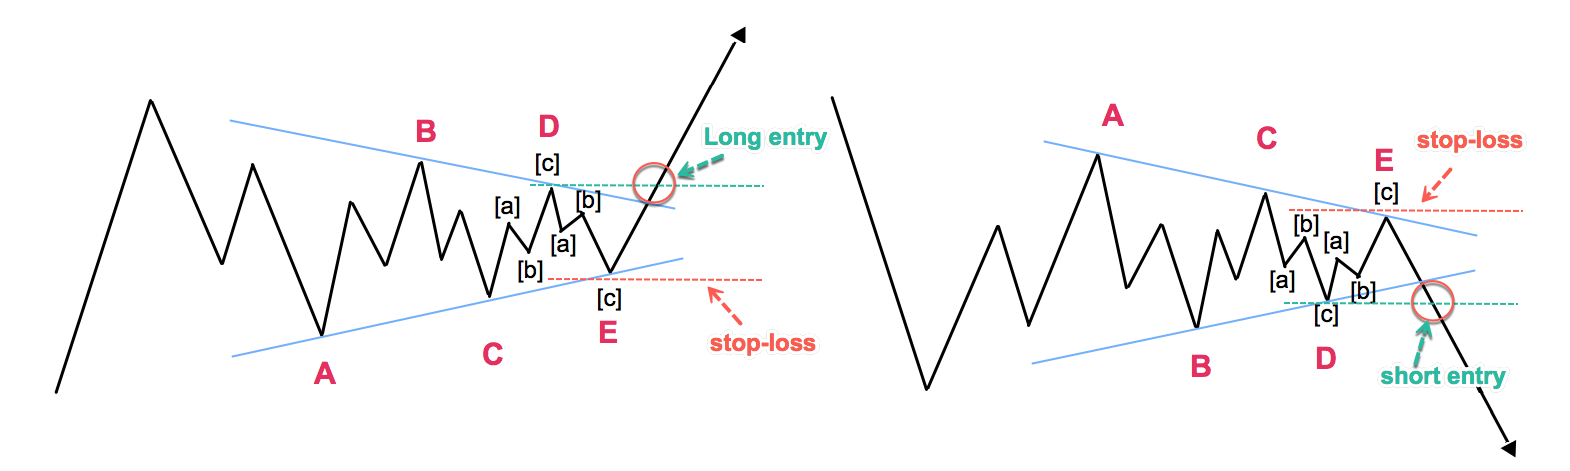 الگوی مثلث (Triangle pattern)